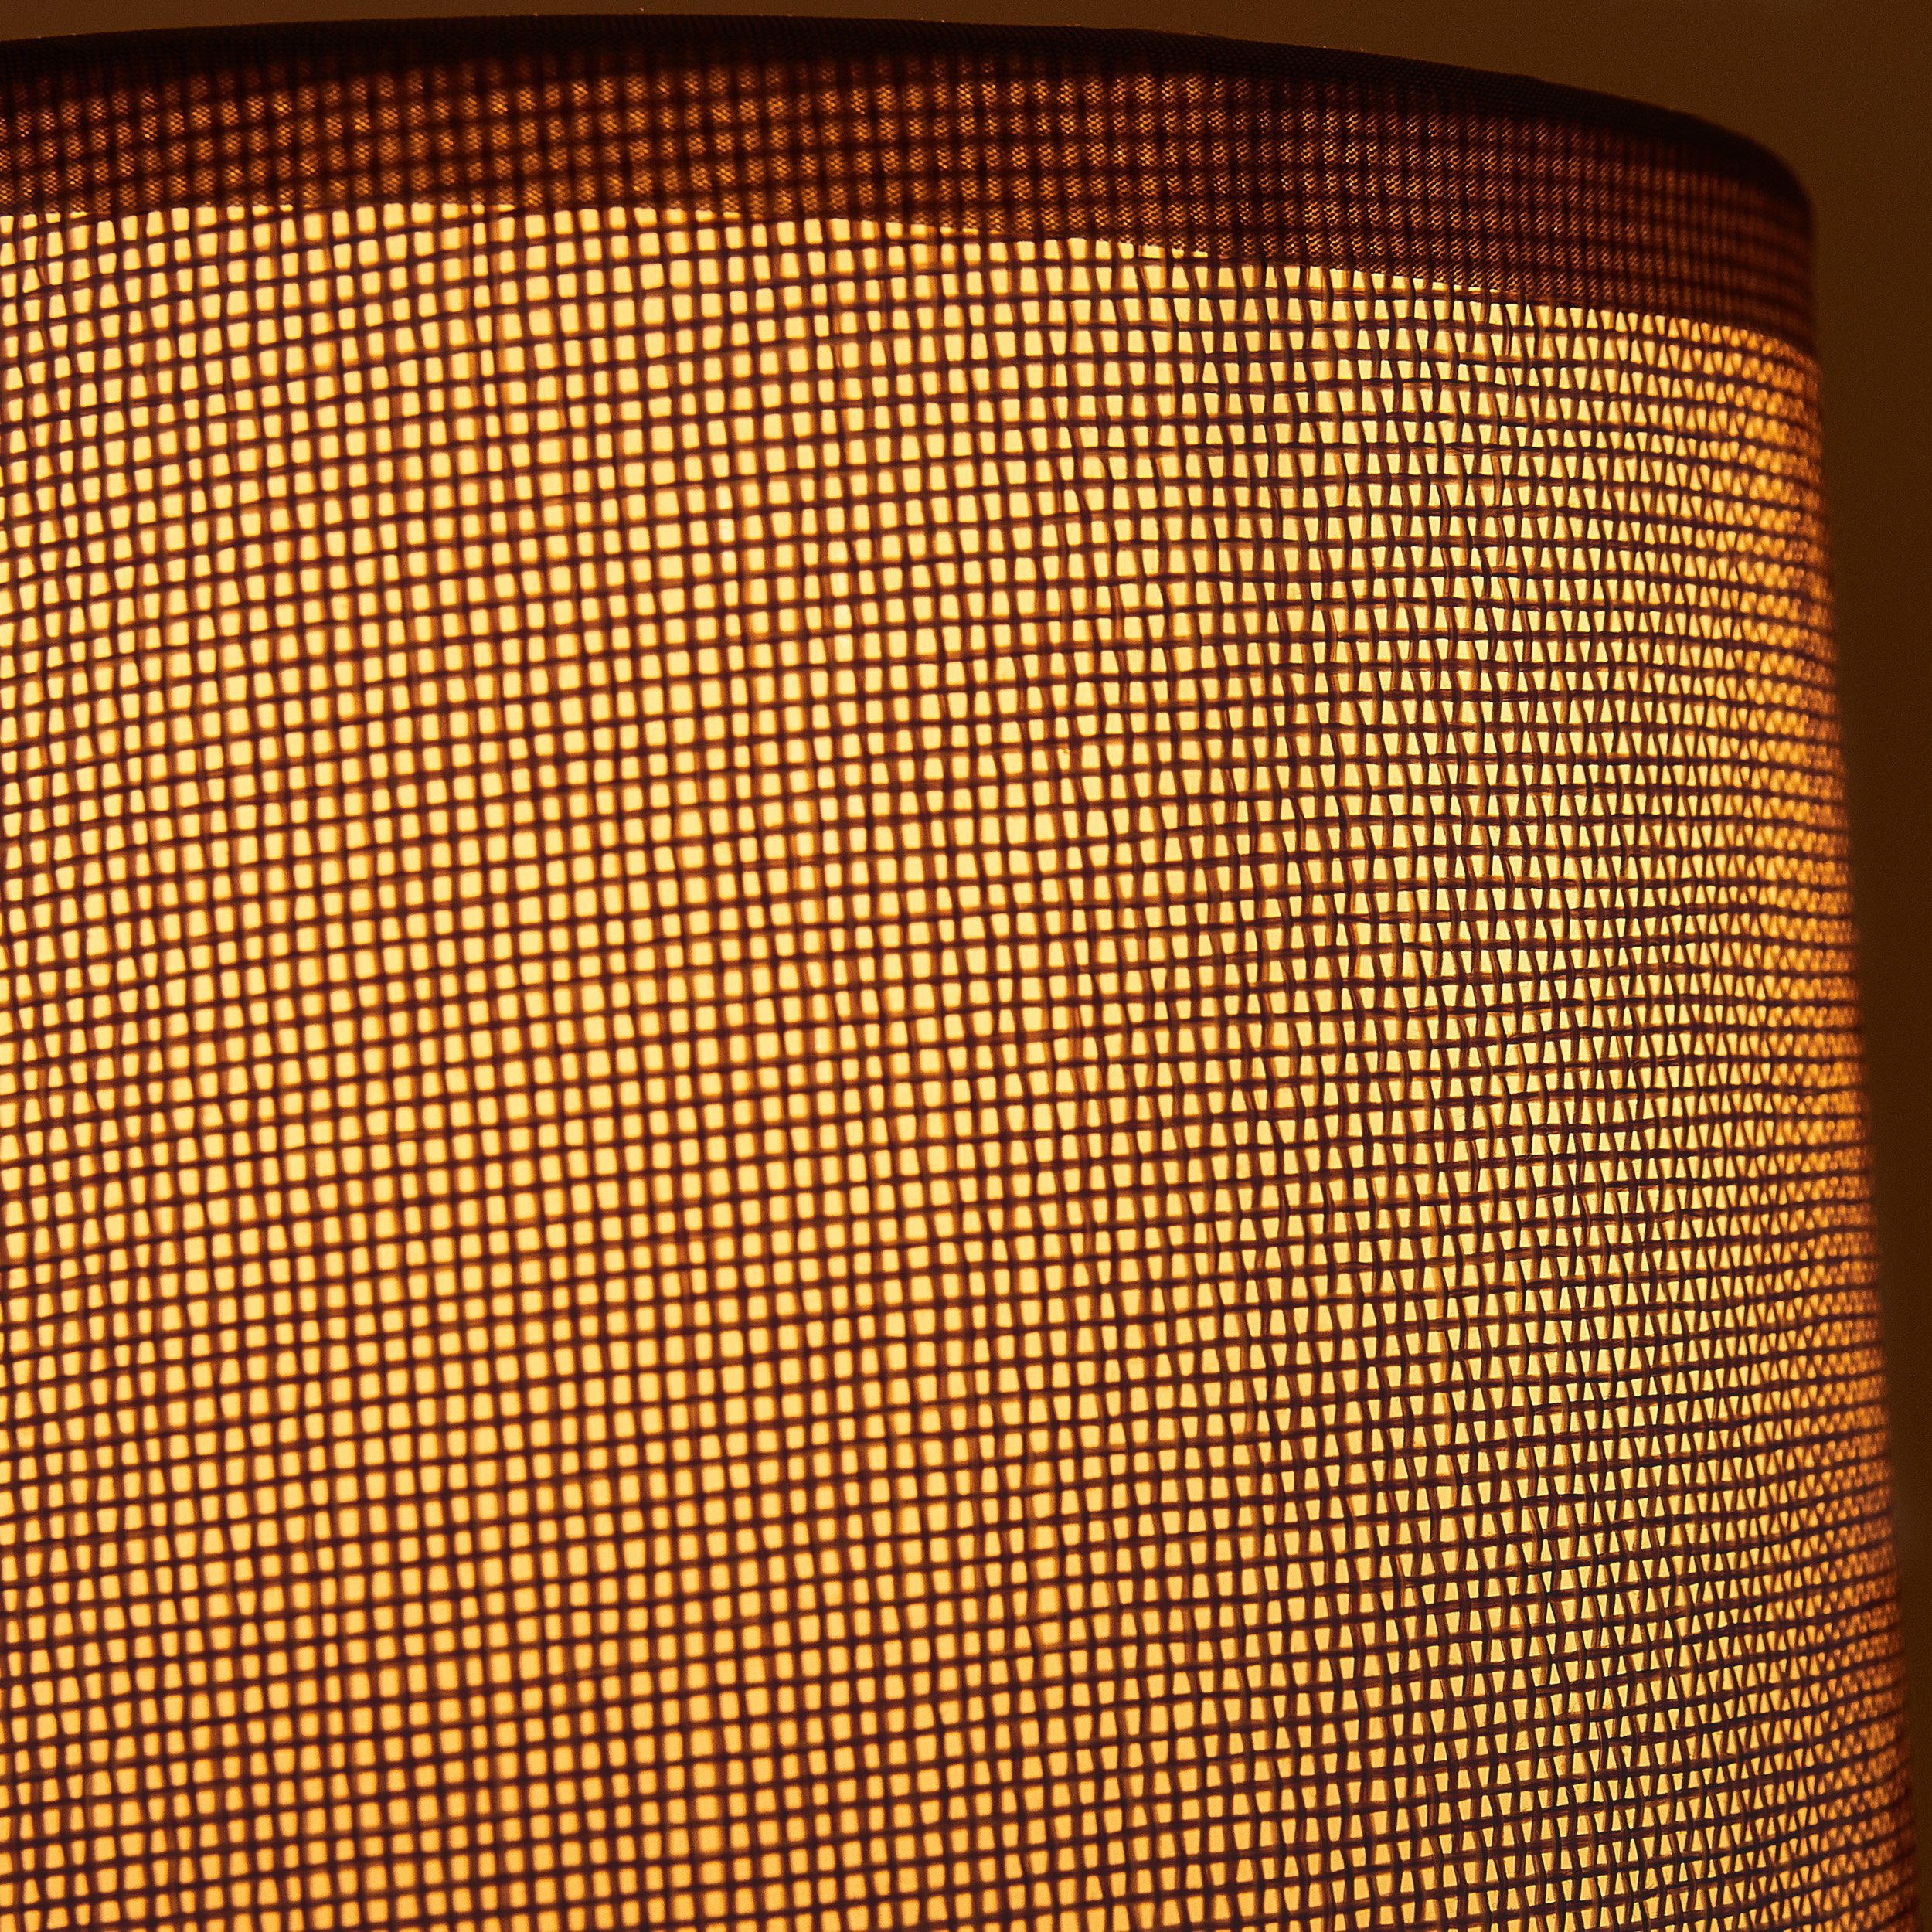 BRUBAKER Tischleuchte Designer Nachttischlampe Grau, 2er - Ohne Set 1x Nachttischlampen mit oder Tischlampe, Keramikfuß - Leuchtmittel, Modern Deko